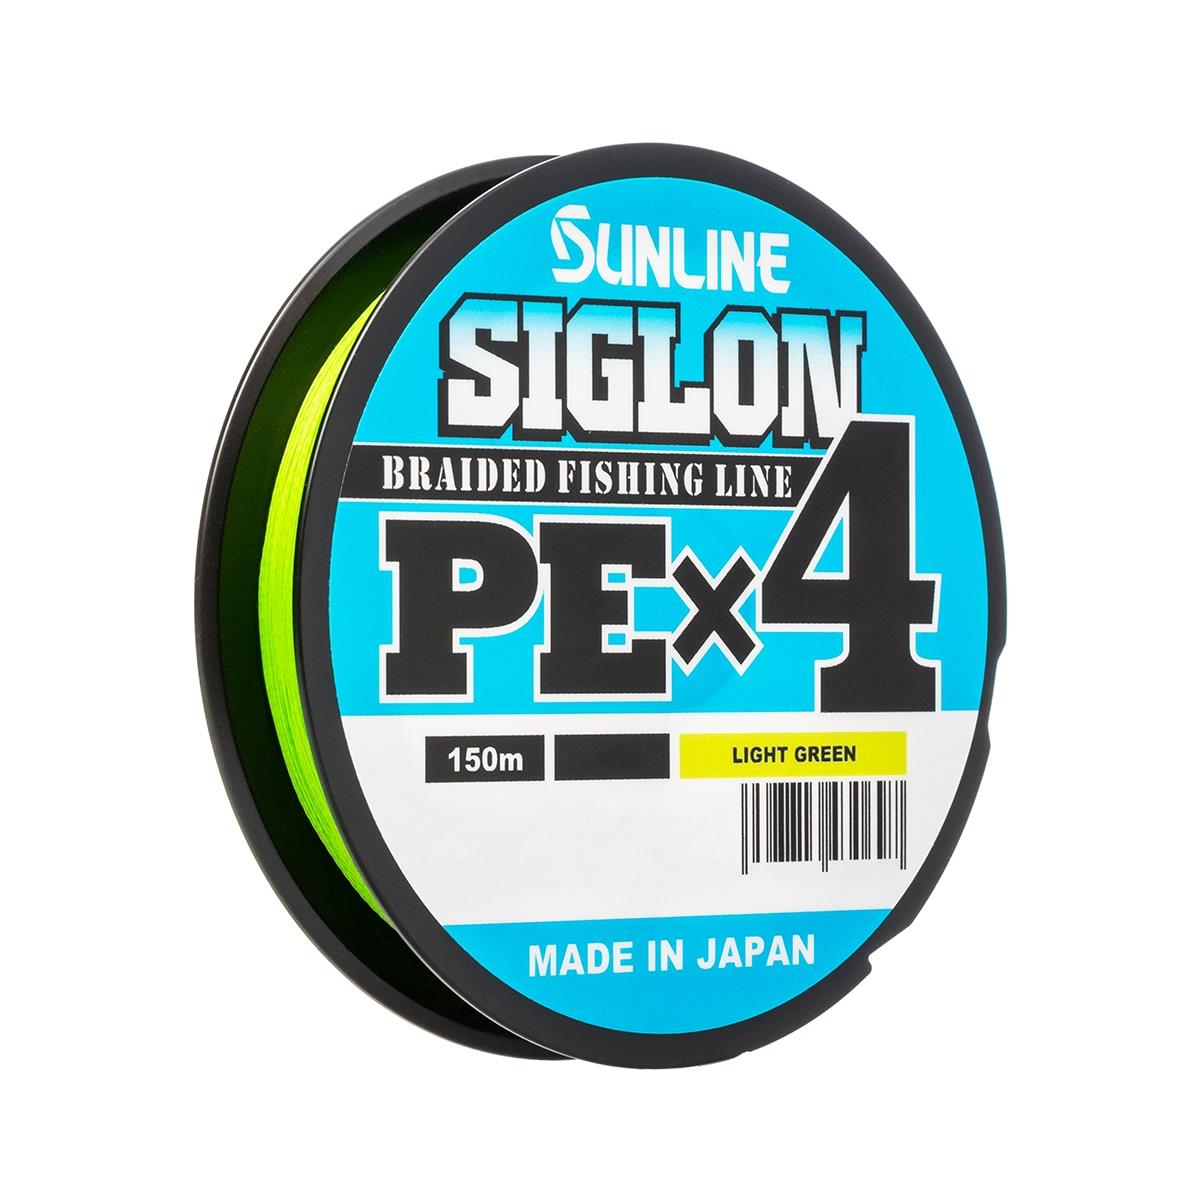 Шнур SIGLON PE×4 150 м (Light green) Sunline шнур для вязания 100% полиэфир 1мм 200м 75±10гр 18 джинс